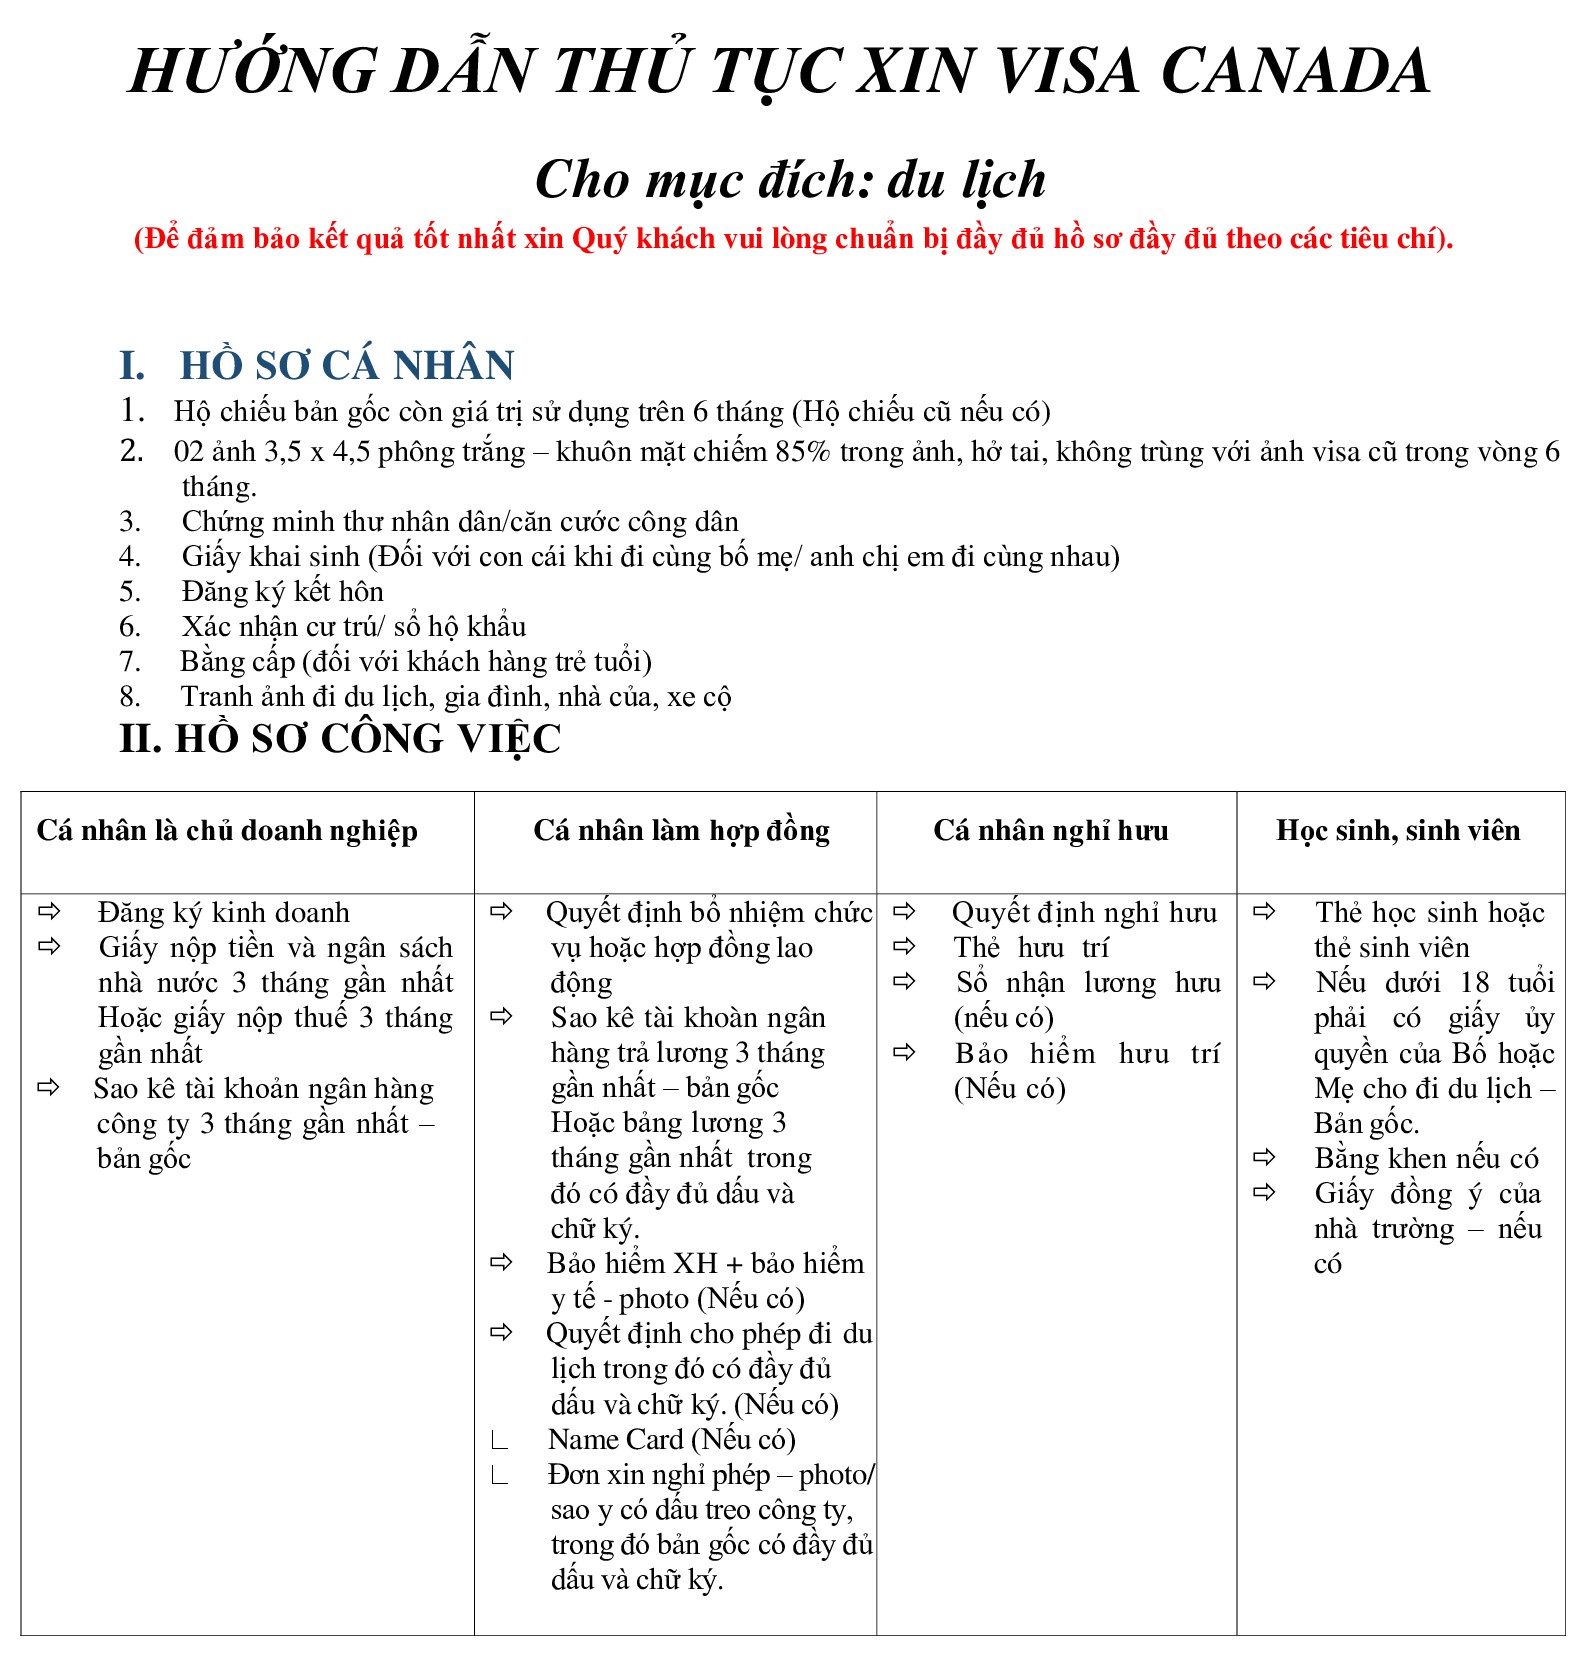 Hồ sơ và thủ tục Visa Canada du lịch